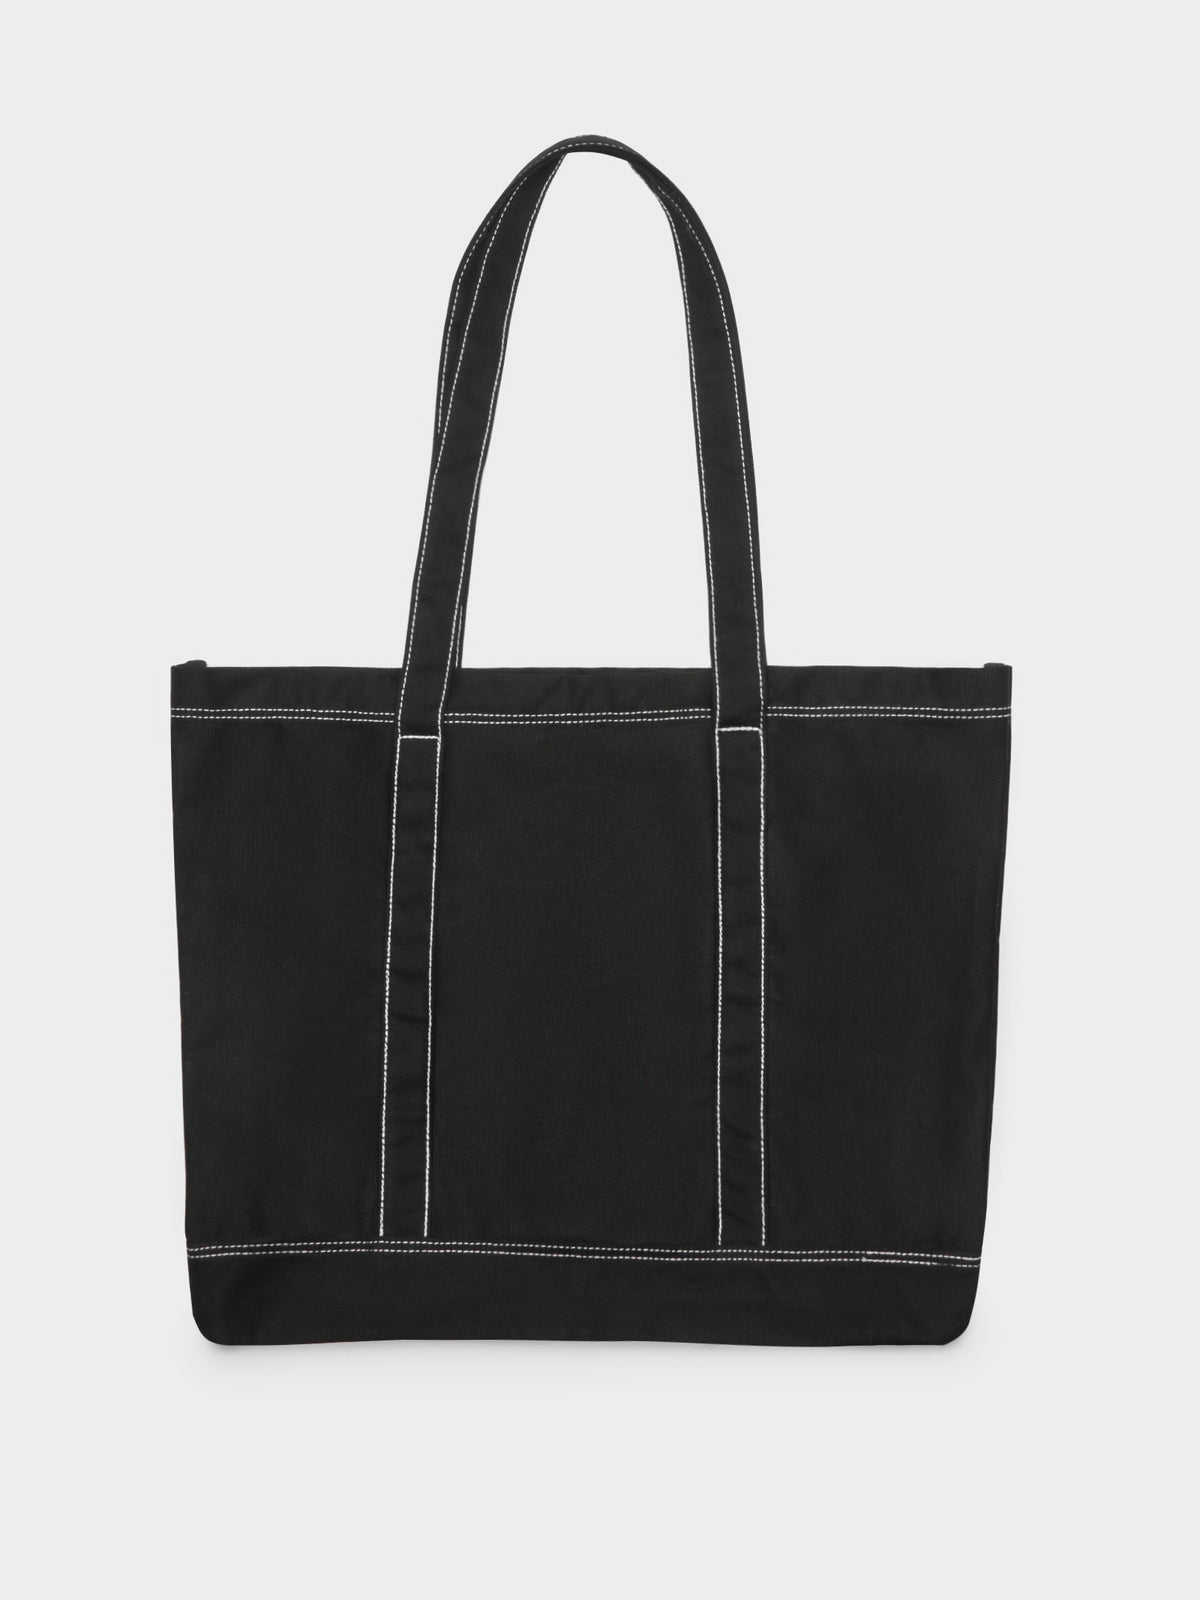 Stock Tote Bag in Black